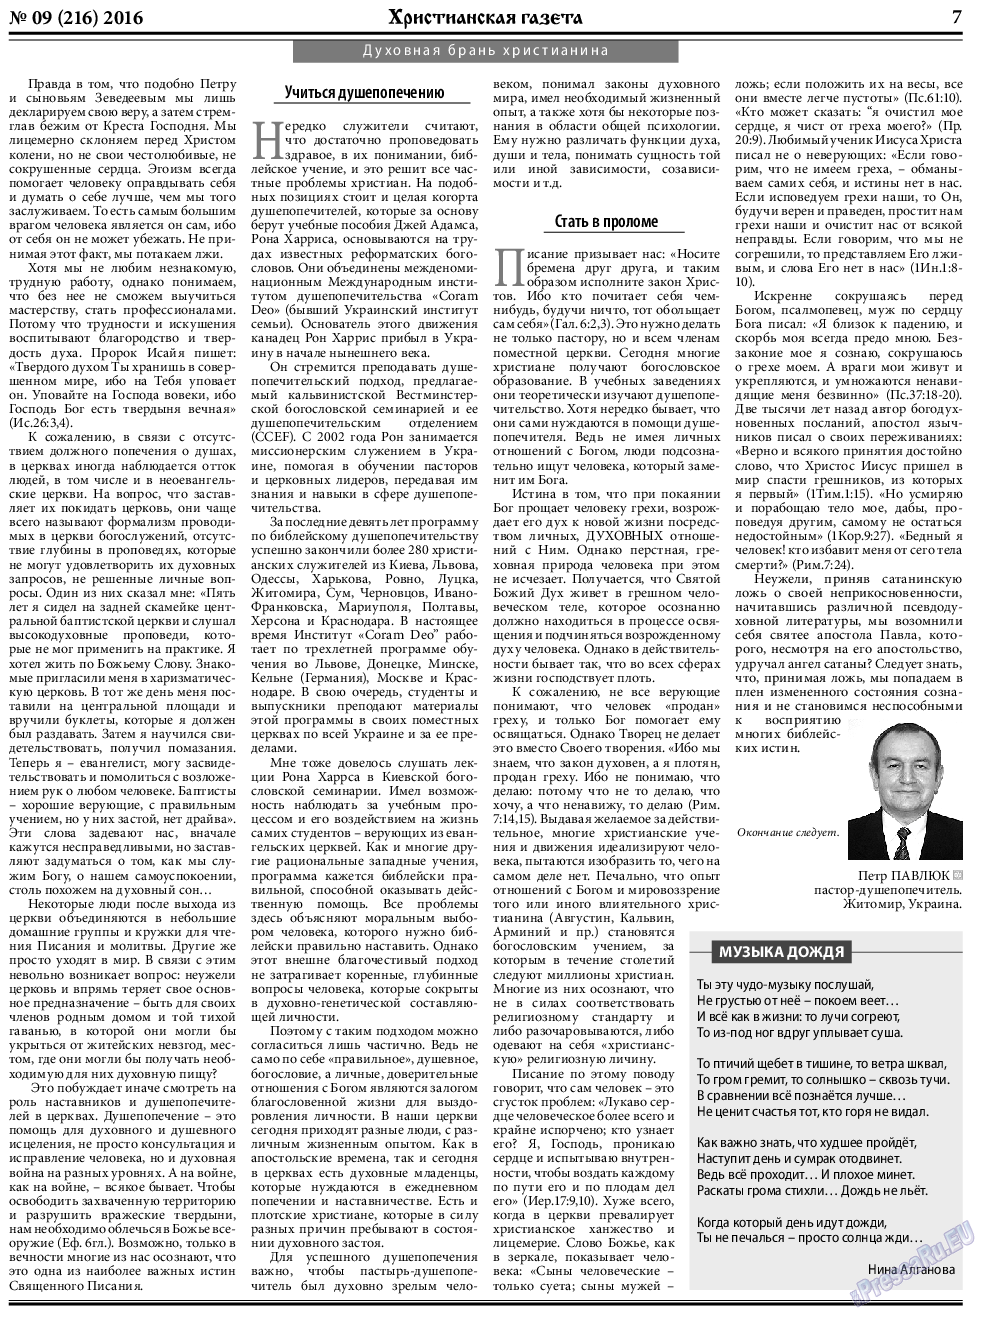 Христианская газета, газета. 2016 №9 стр.7